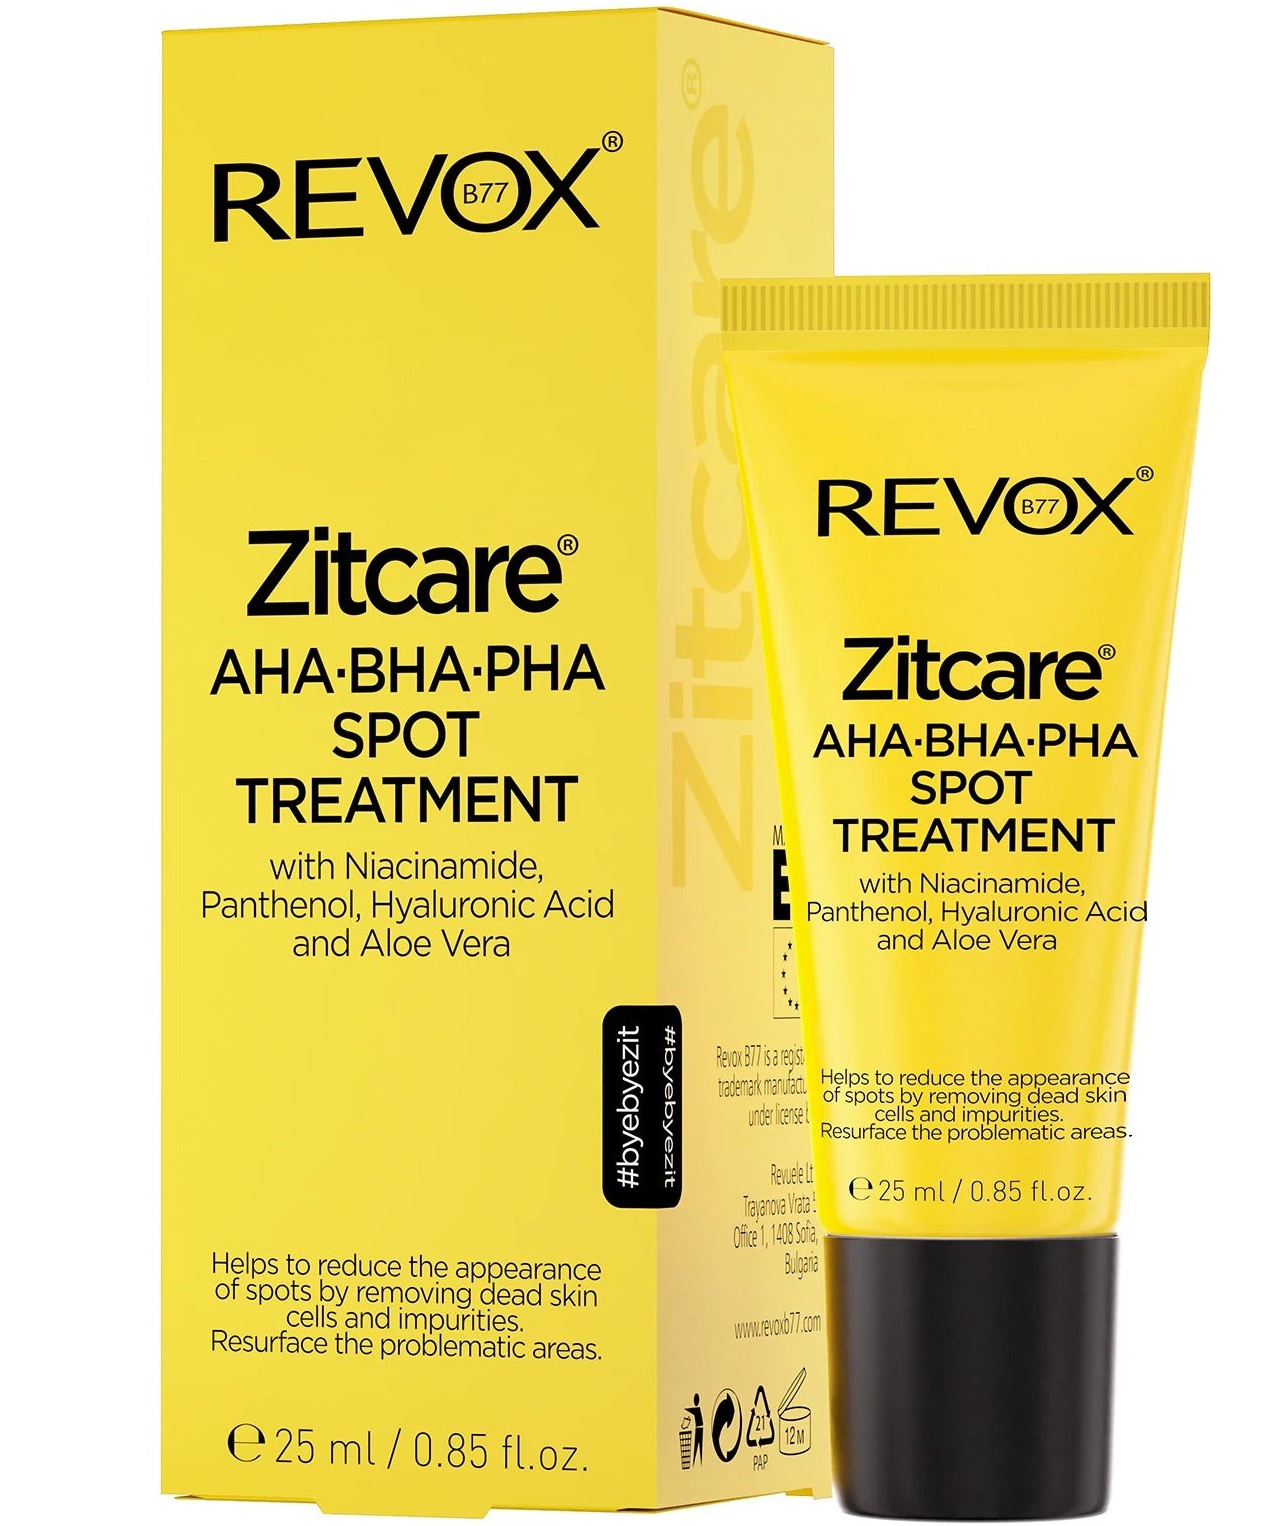 Revox Zitcare AHA BHA PHA Spot Treatment